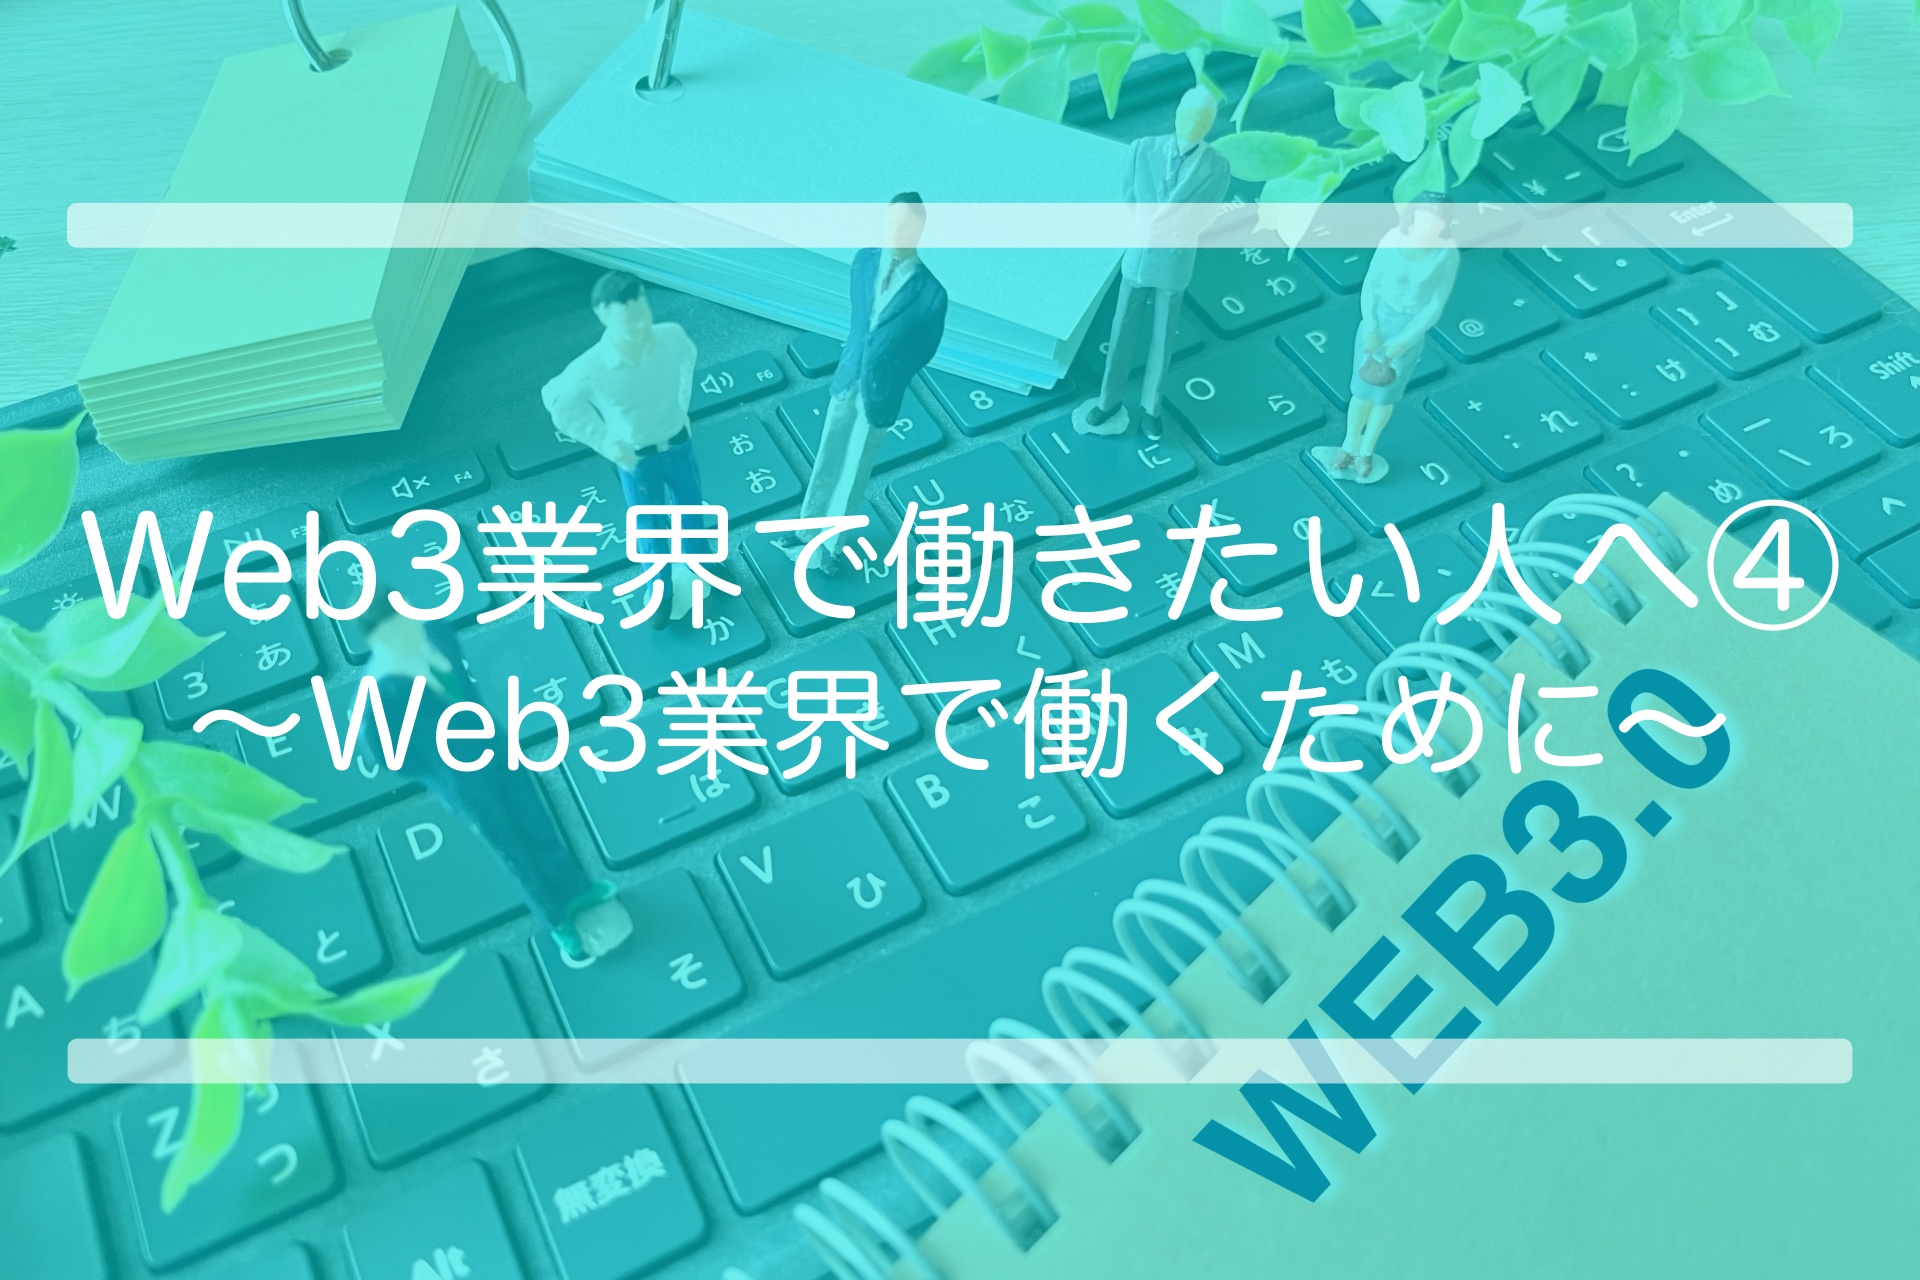 Web3業界で働きたい人へ④ 〜Web3業界で働くために〜